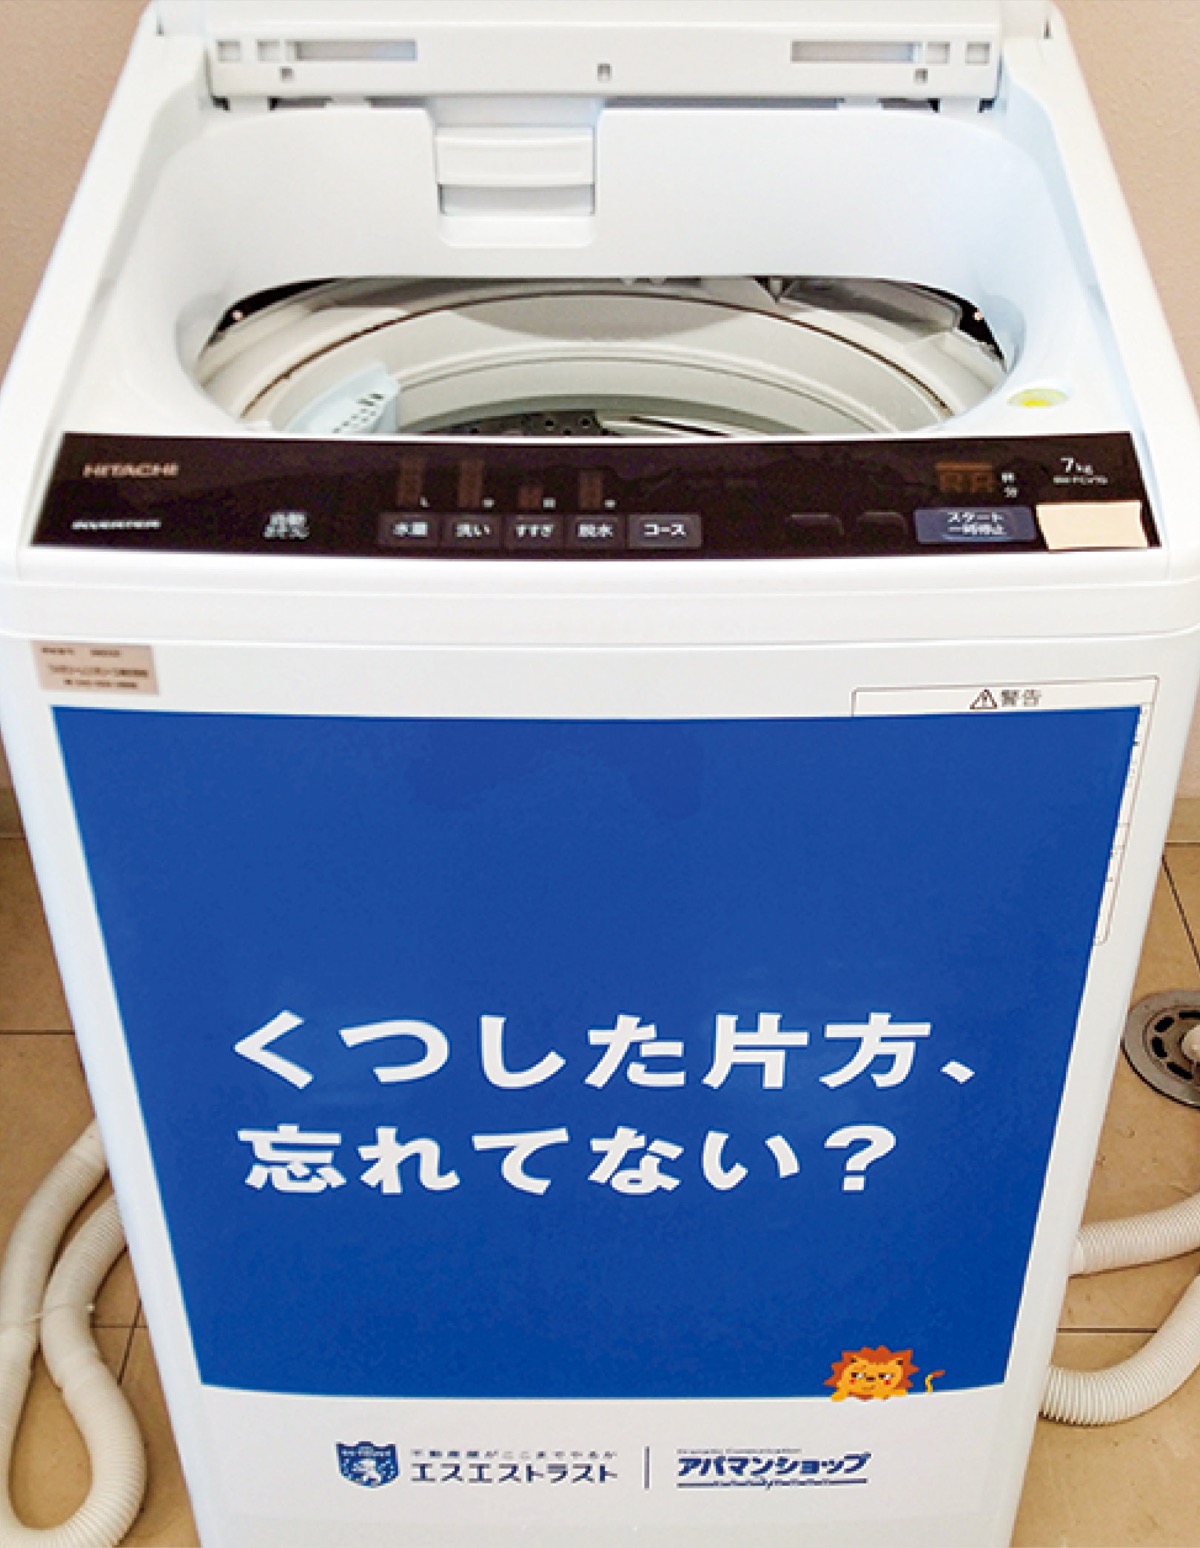 新ジャンル 洗濯機に広告